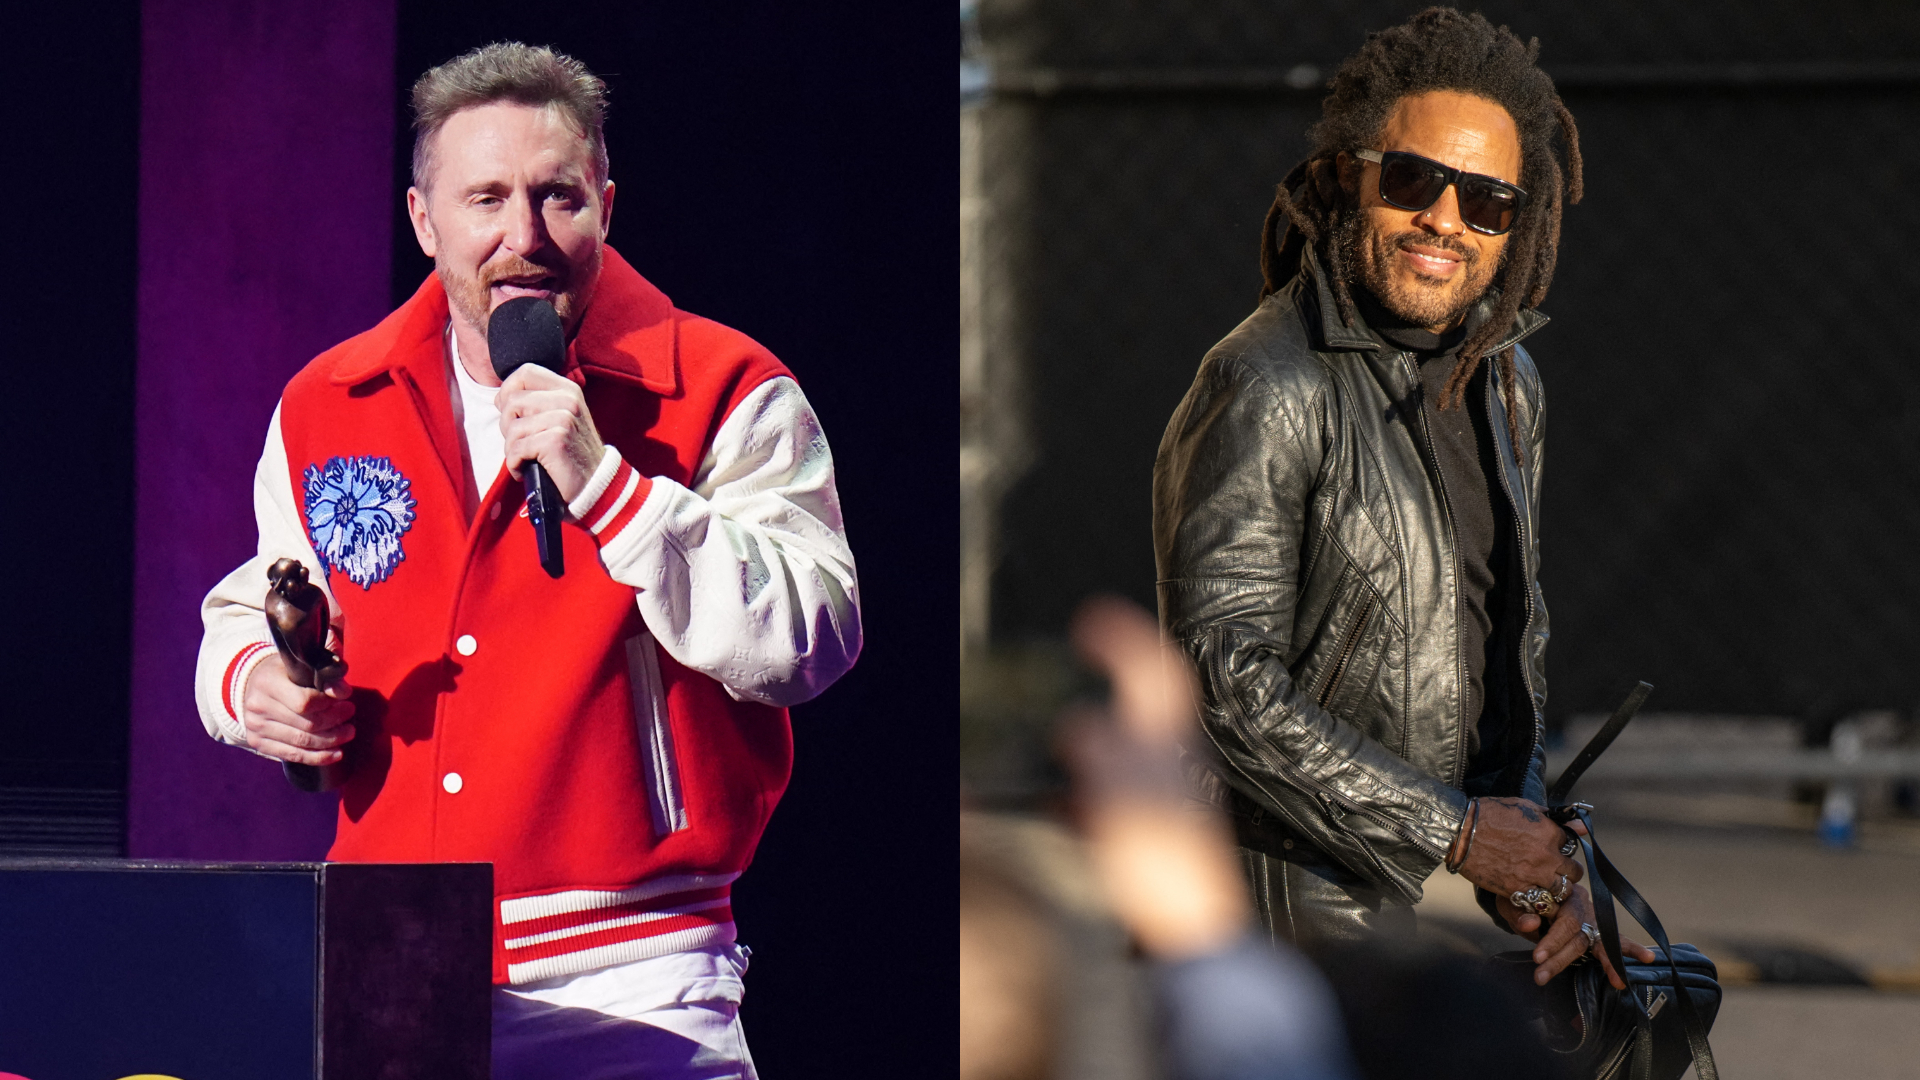 David Guetta et Lenny Kravitz aux Eurockéennes de Belfort l'été prochain